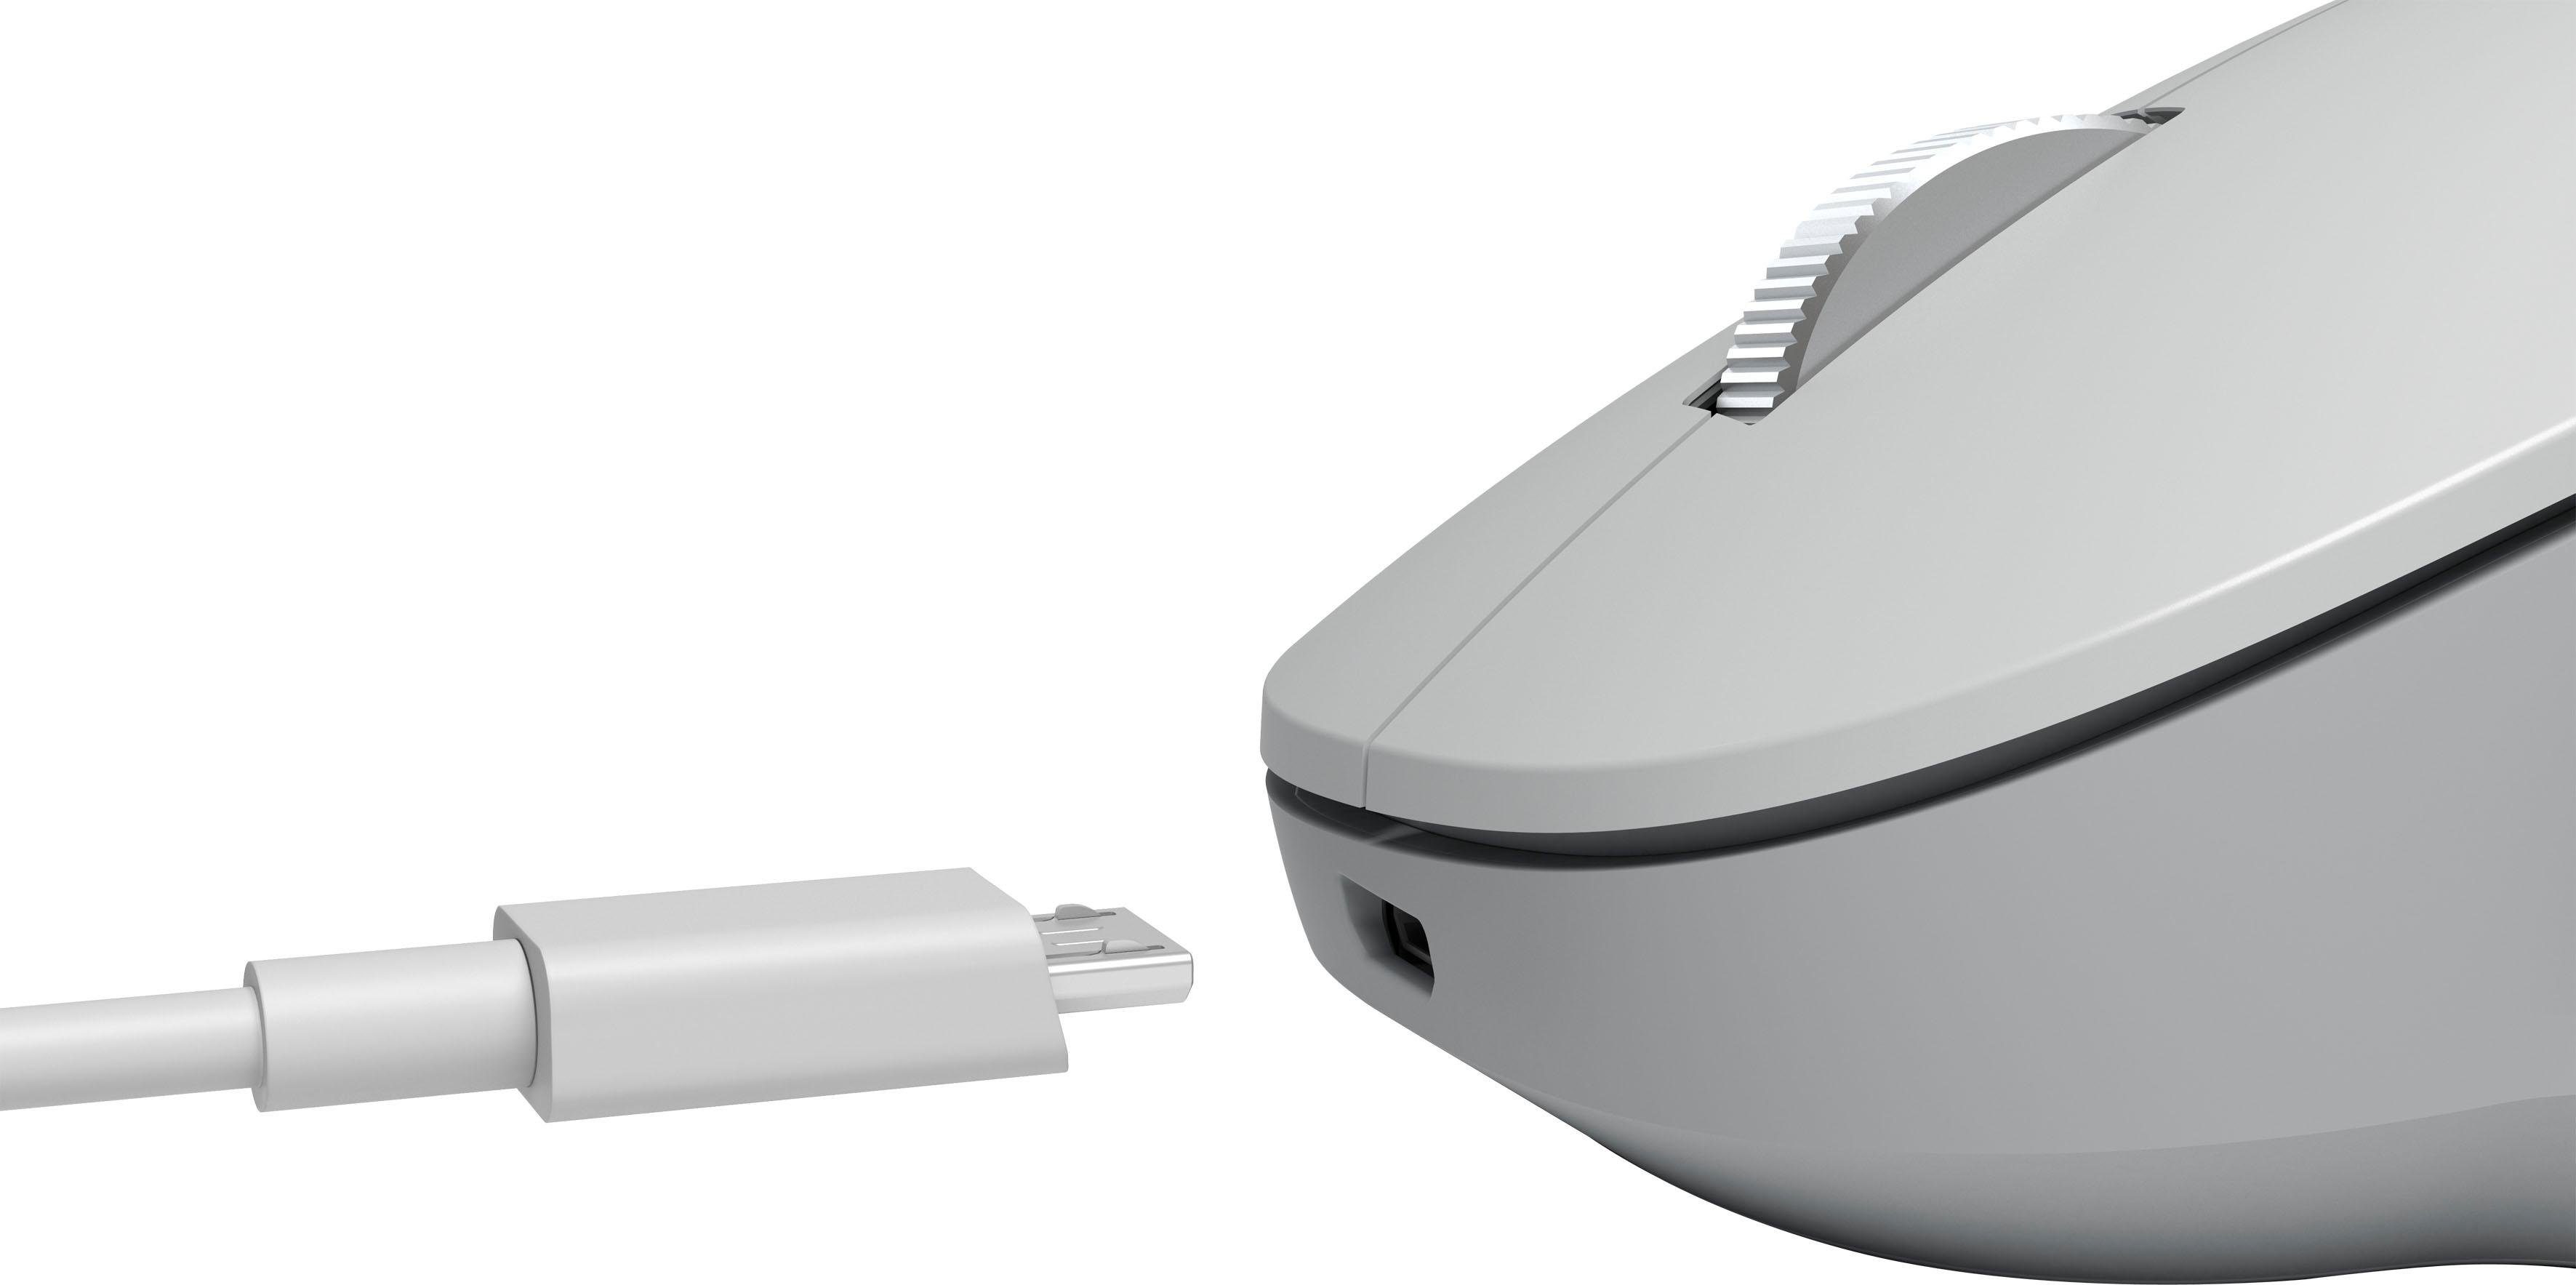 Microsoft Surface Precision Maus (kabelgebunden)